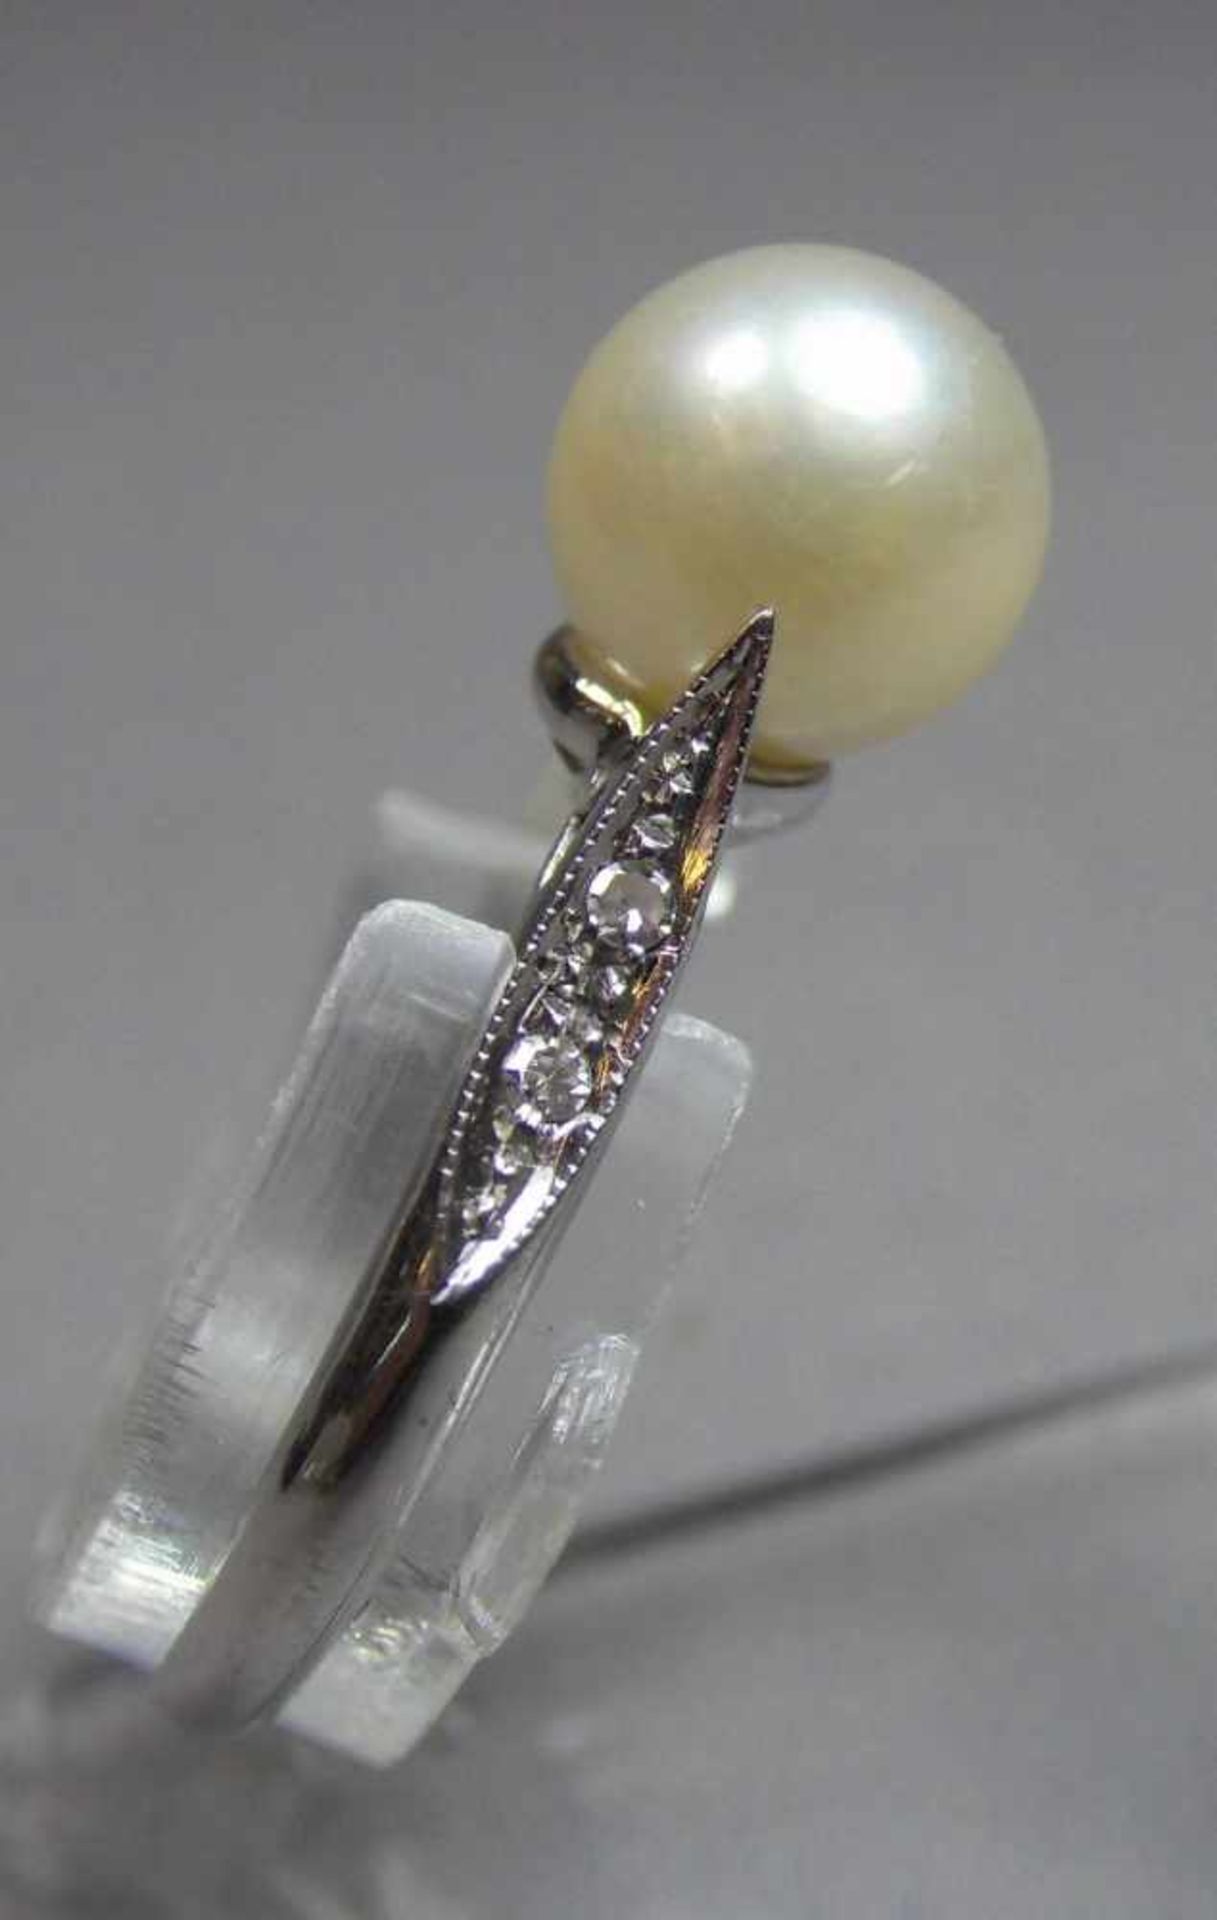 RING, 750er Weissgold (2,7 g), besetzt mit einer Perle von 8 mm D.; Ring-Gr. 55. - Image 2 of 3